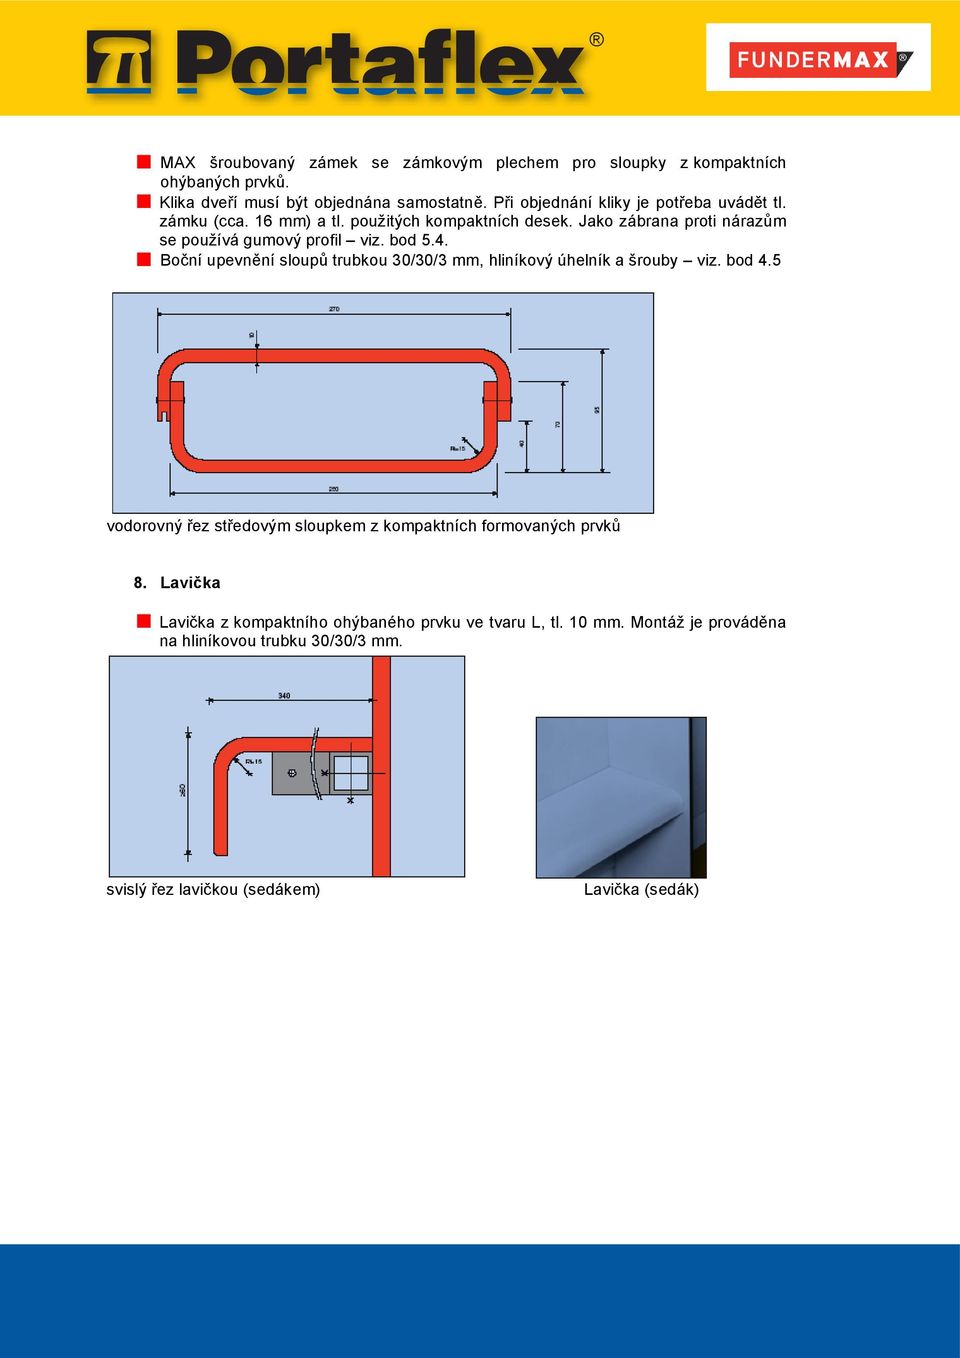 bod 5.4. Boční upevnění sloupů trubkou 30/30/3 mm, hliníkový úhelník a šrouby viz. bod 4.